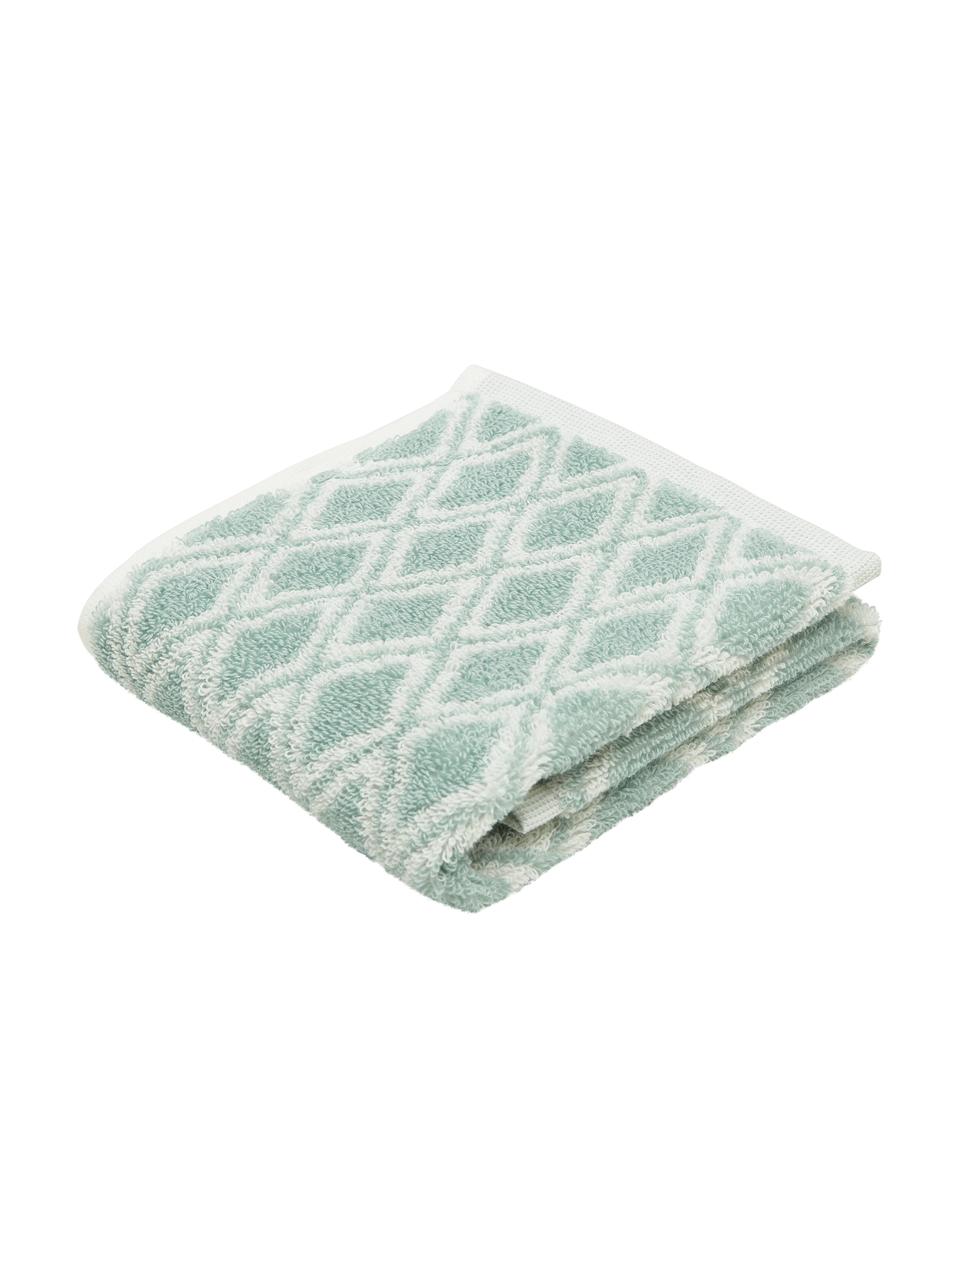 Dwustronny ręcznik Ava, różne rozmiary, Miętowozielony, kremowobiały, Ręcznik do rąk, S 50 x D 100 cm, 2 szt.